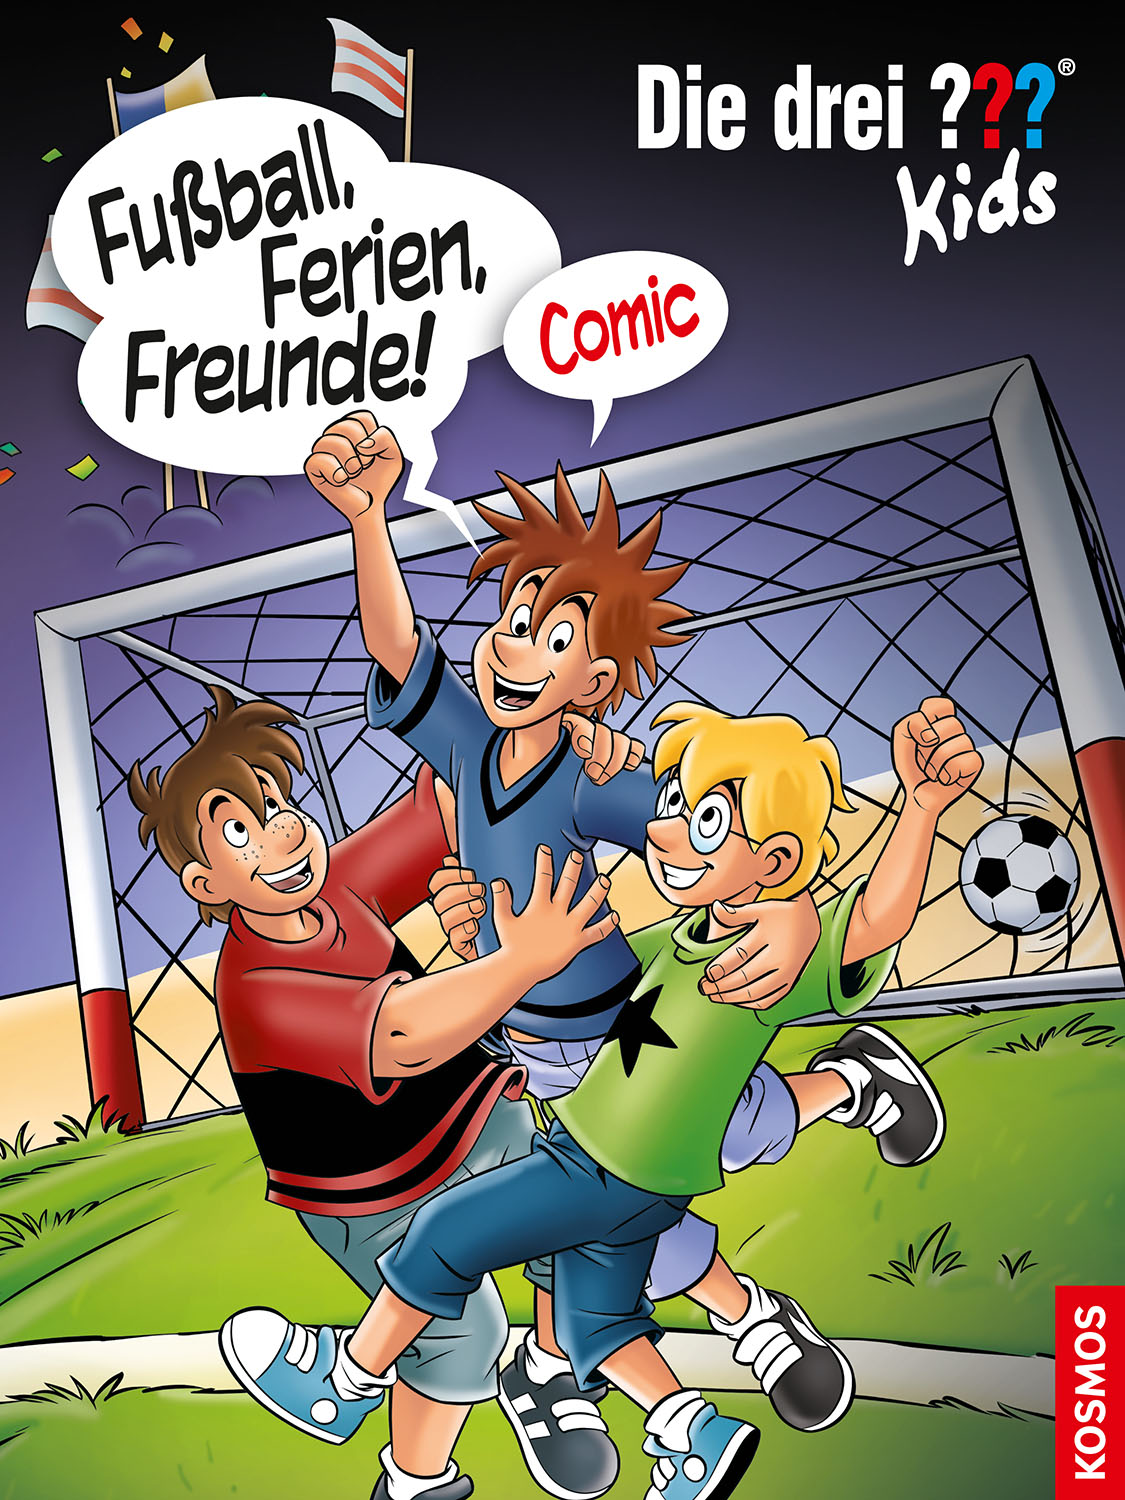 Die Drei ??? (Fragezeichen) Kids, Buch-Special: Fußball, Ferien, Freunde!